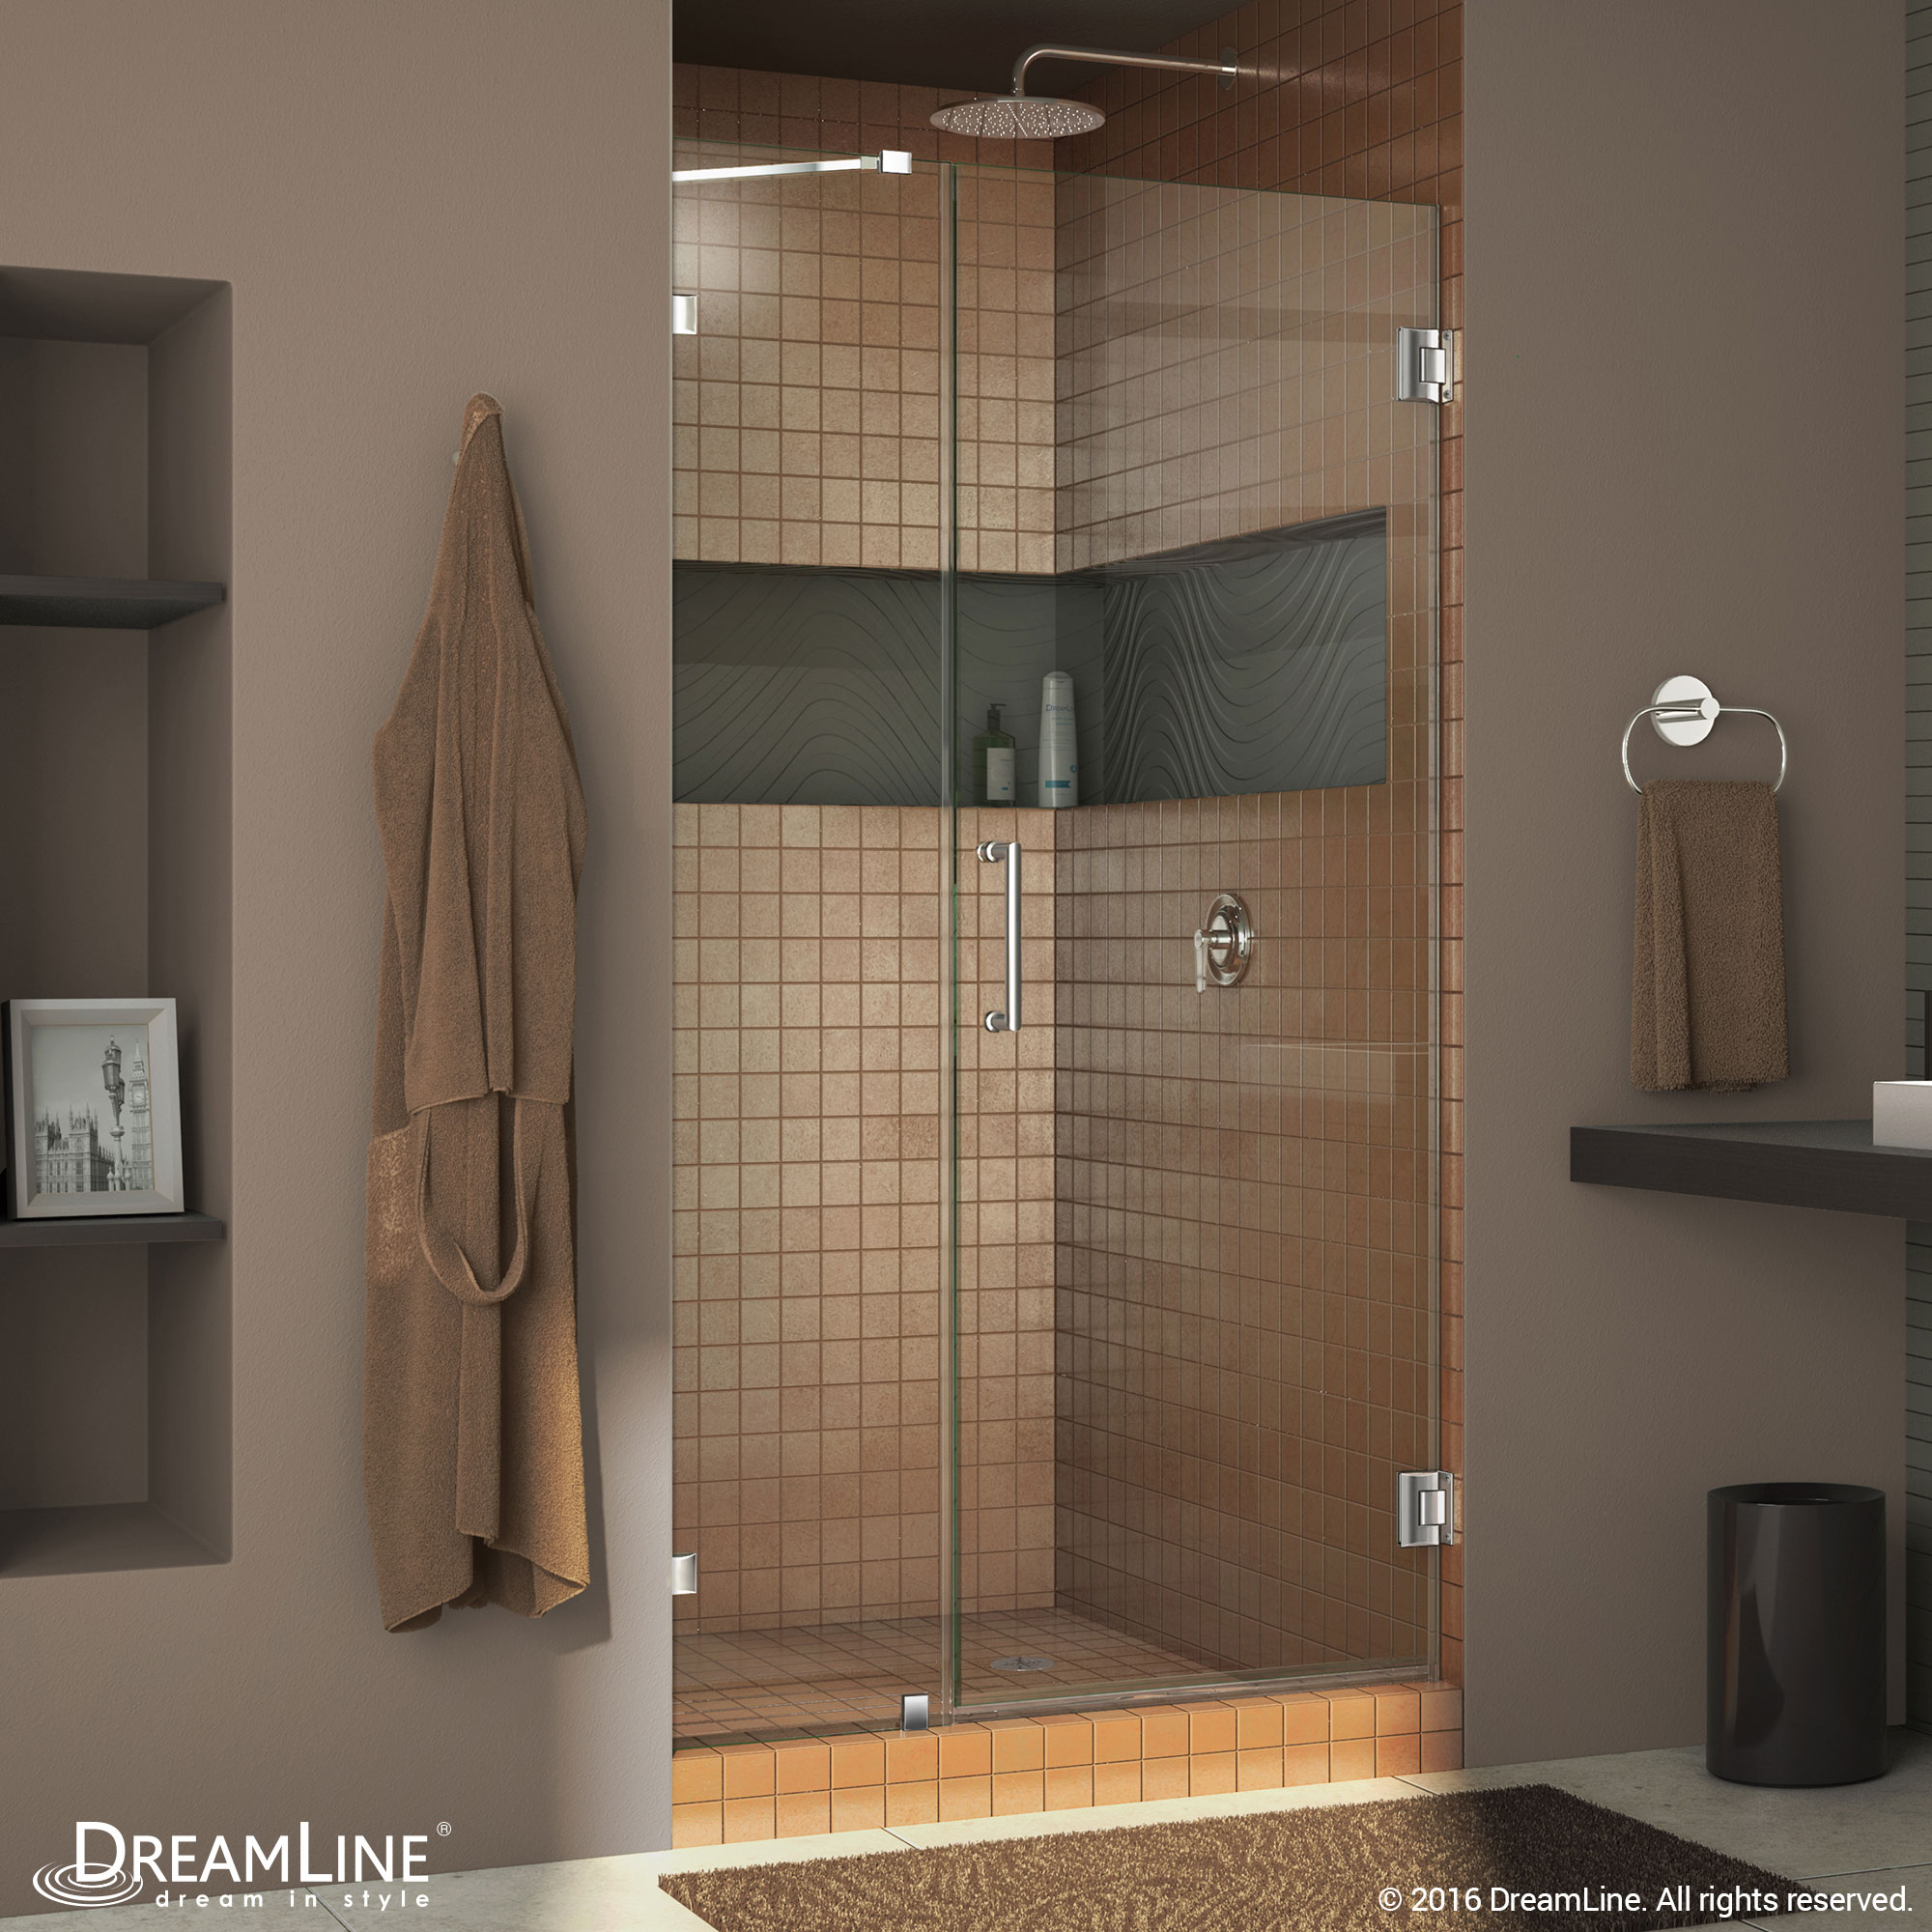 Dreamline SHDR-23467210-01 Chrome Radiance 46" Frameless Hinged Shower Door